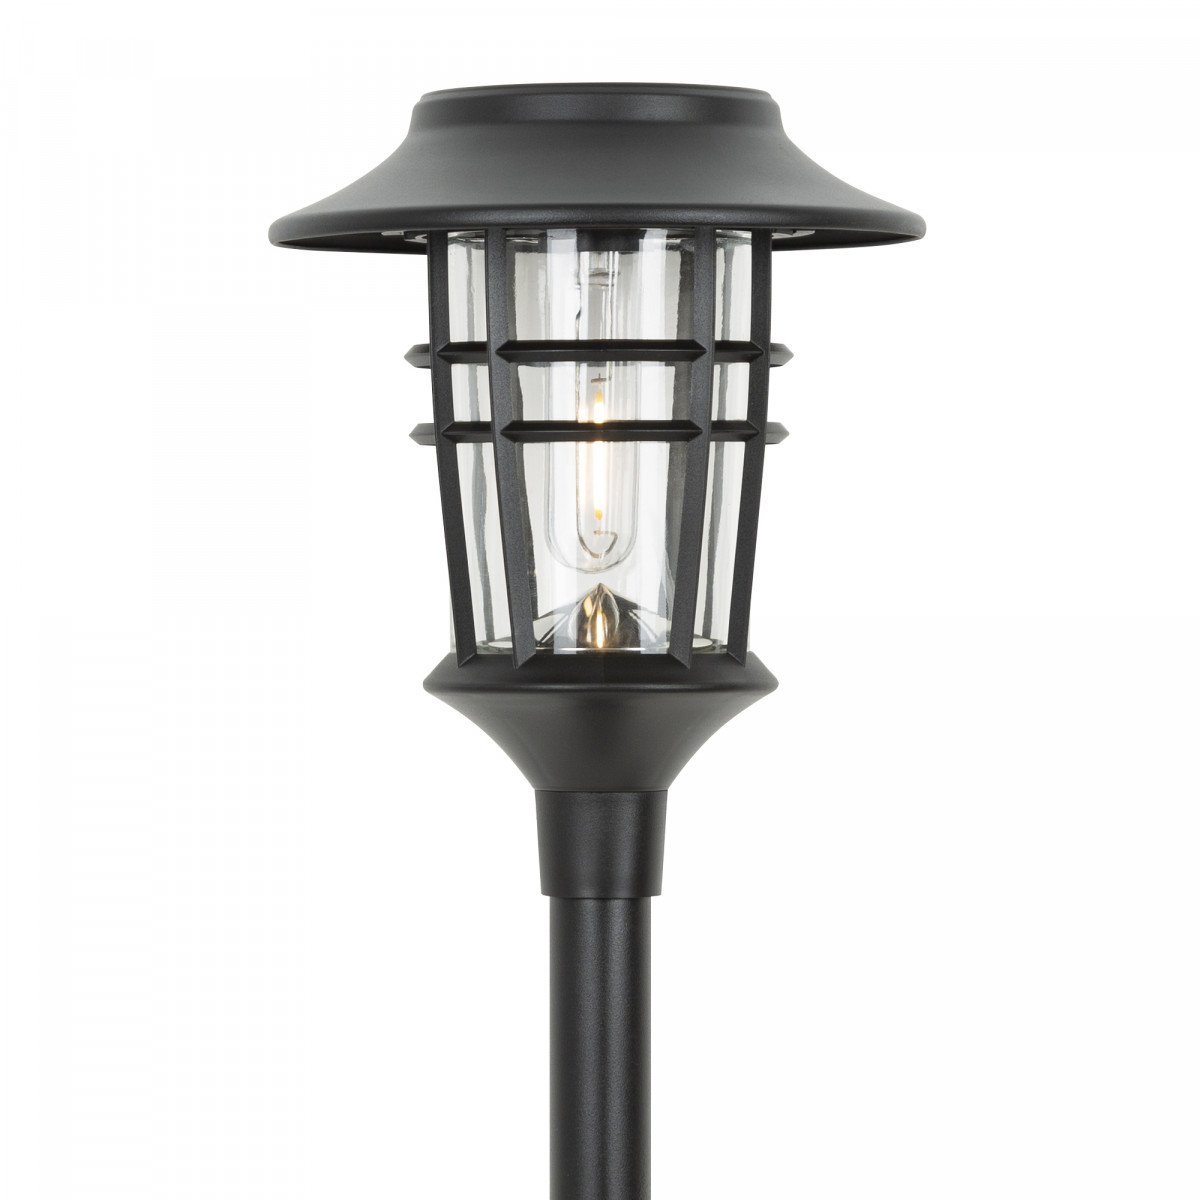 LED Solar Fackel mit Spieß, Außenbeleuchtung Ohne Verdrahtung, ladet sich auf über Sonnlicht, in der Farbe Schwarz, von der Marke KS Beleuchtung, Umweltfreundlich Außenbeleuchtung 